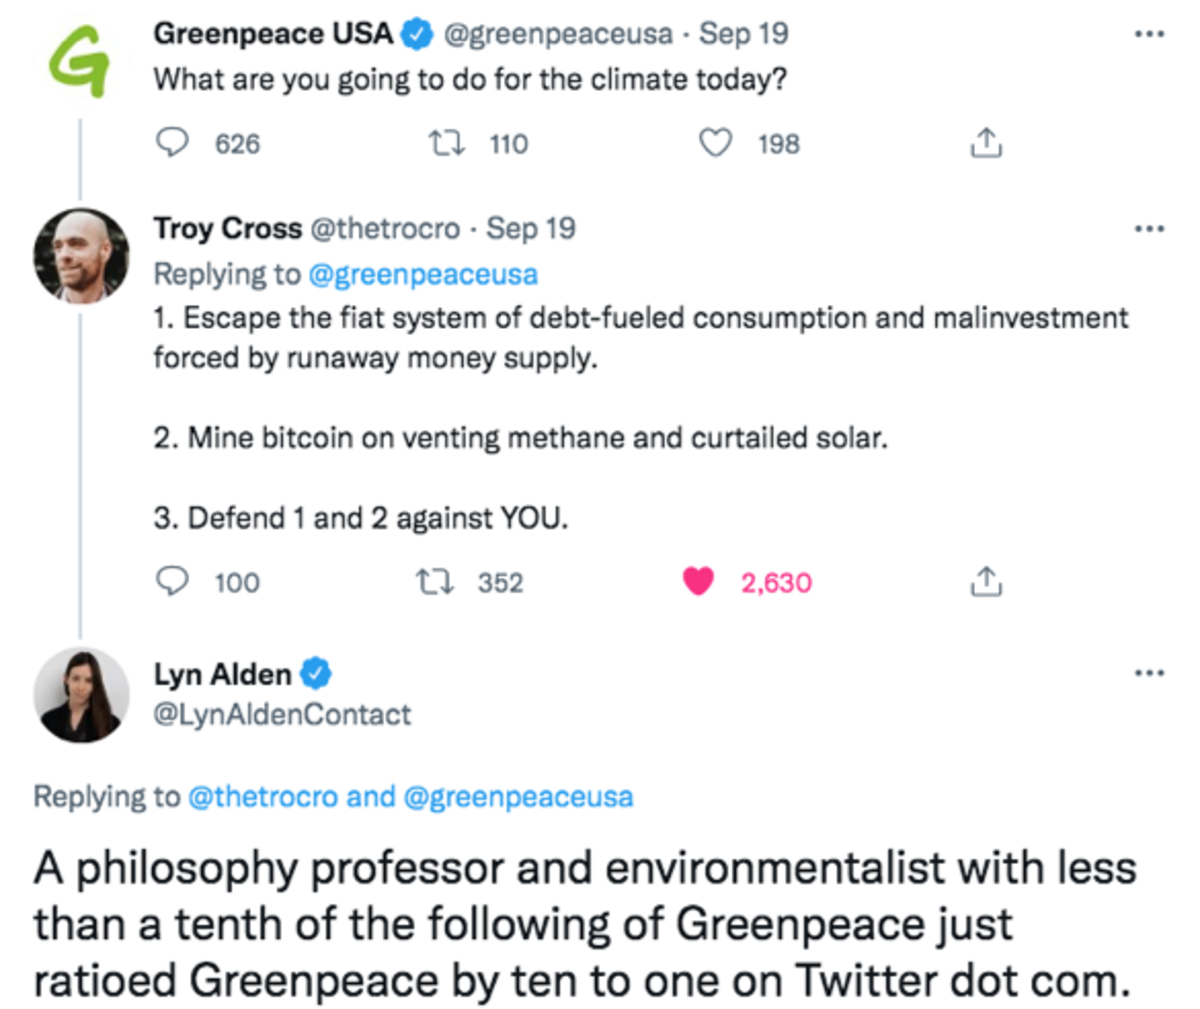 La desinformación subyacente expuesta durante la campaña "Cambiar el código" de Greenpeace EE. UU. solo sirvió para reunir a la comunidad de Bitcoin.